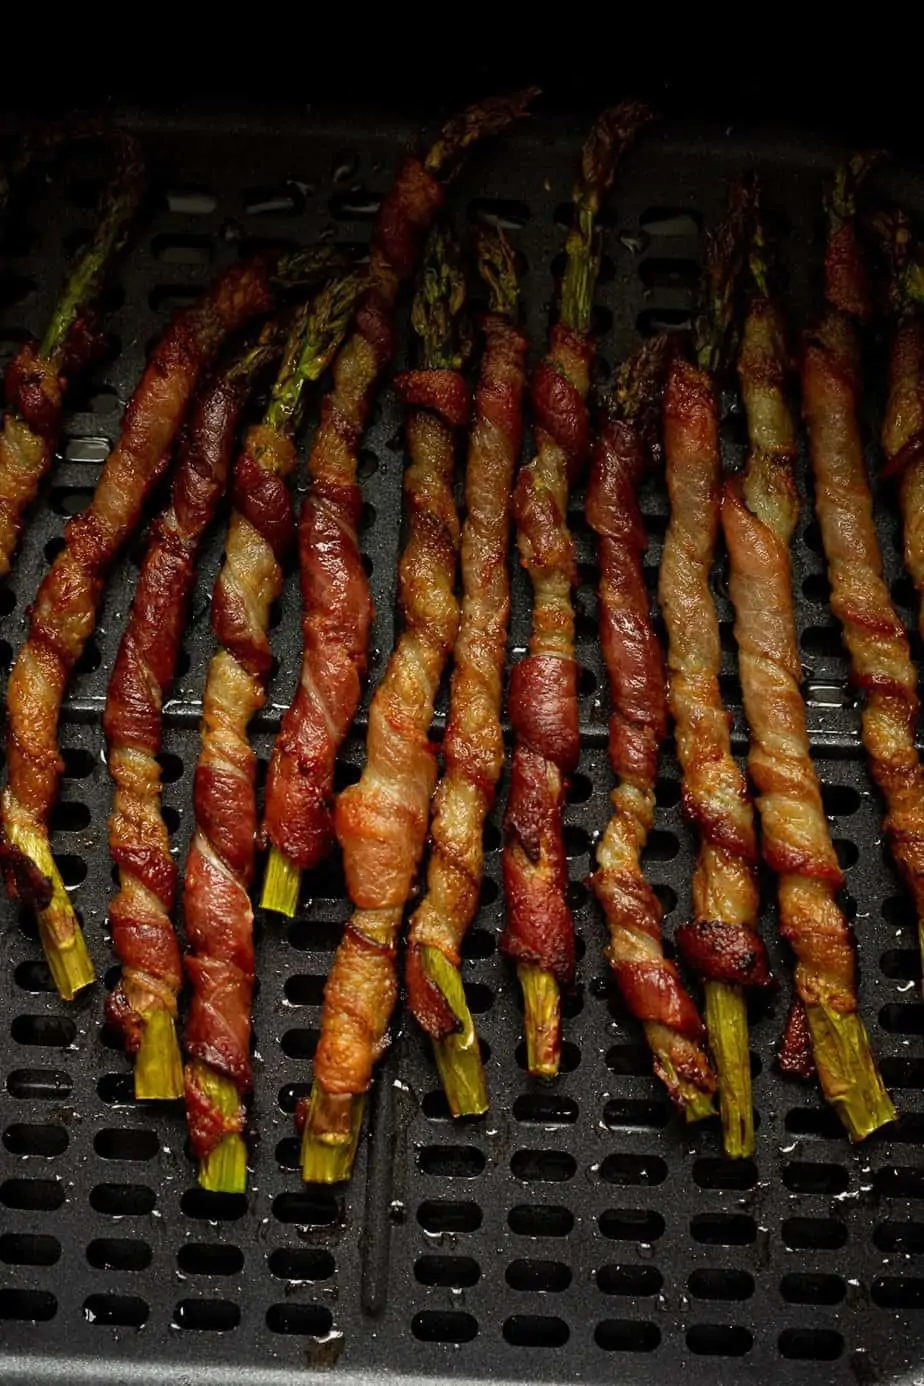 crispy bacon wrapped asparagus